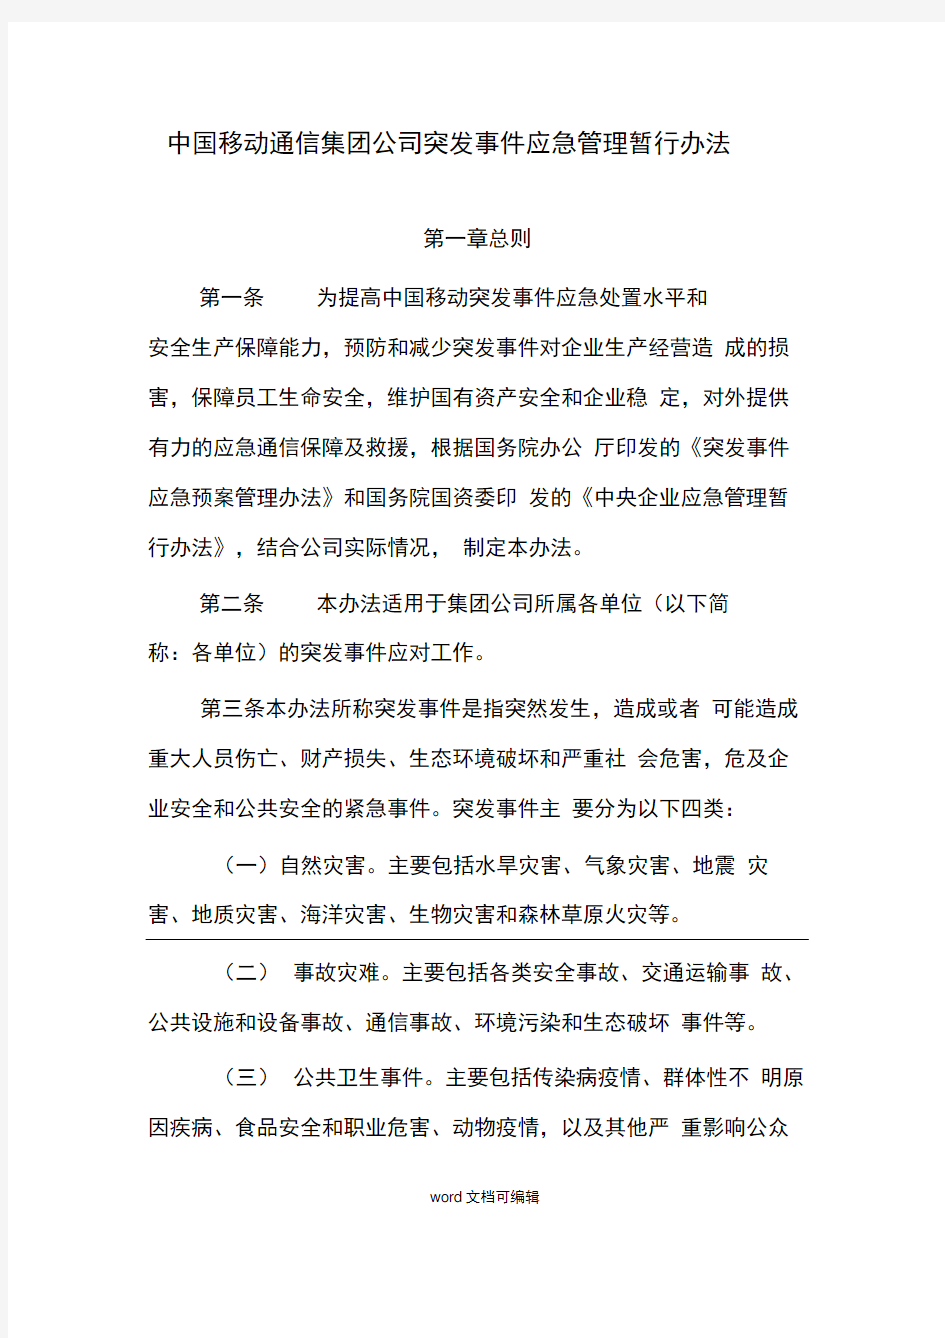 中国移动通信集团公司突发事件应急管理暂行办法.docx